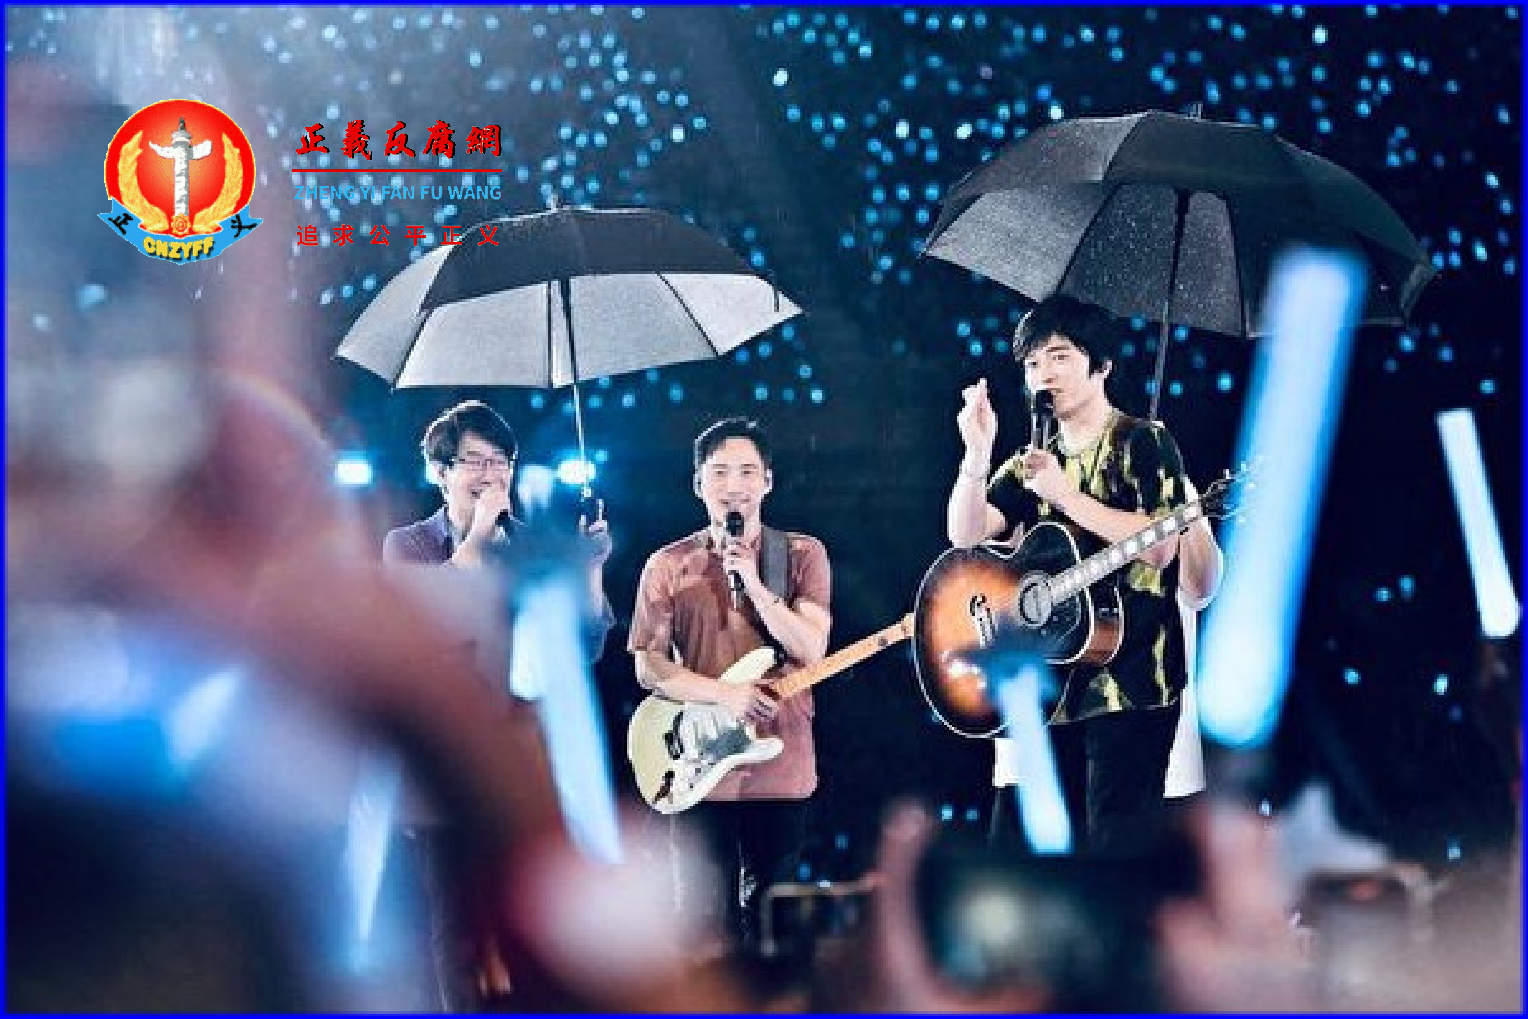 河南女企业家赵女士当年投资明星演唱会被骗1200万元。图为五月天在细雨中与粉丝们互动。.png